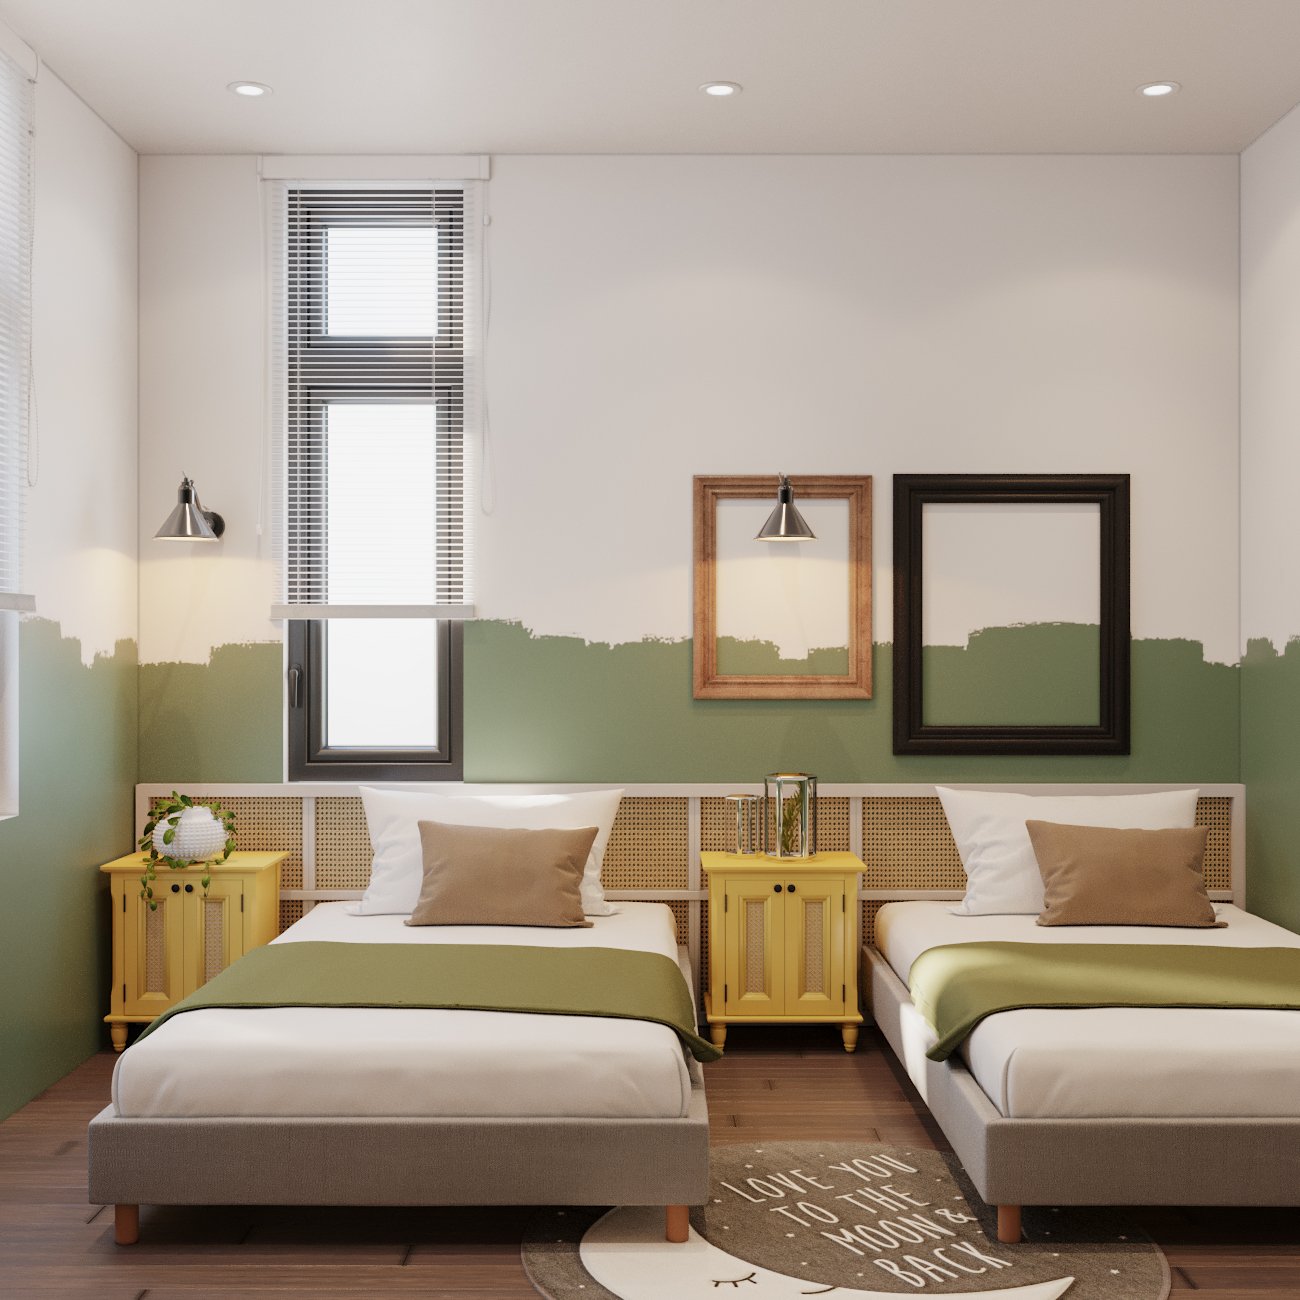 Một phòng ngủ khác với hai giường riêng biệt, bài trí bằng những tông màu trẻ trung, hiện đại hơn như xanh lá cây, vàng bơ, nâu nhẹ...